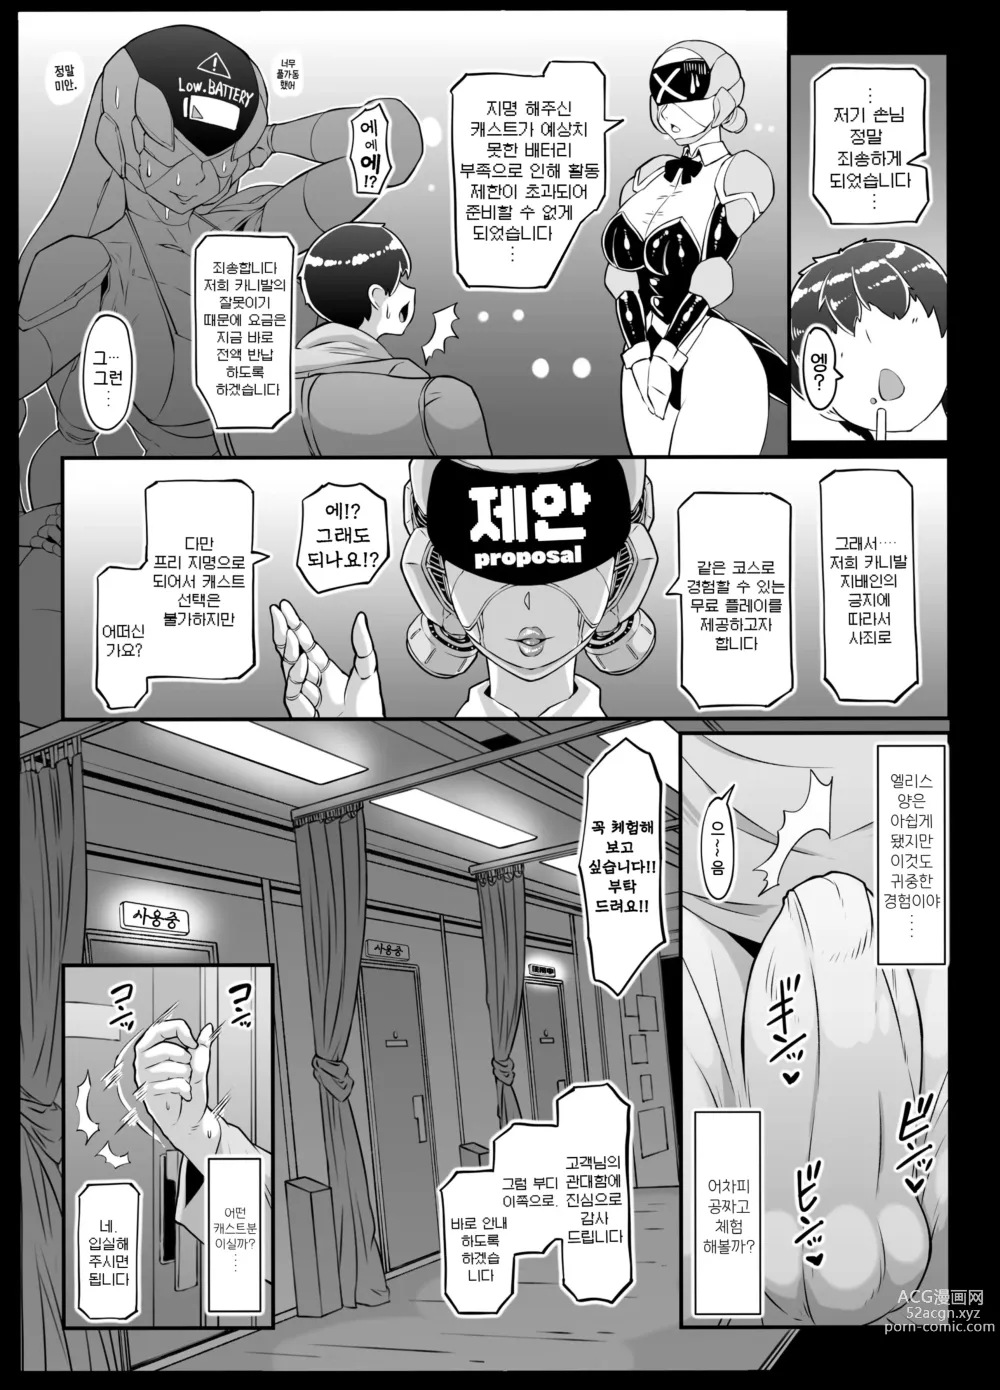 Page 6 of doujinshi 안드로이드의 목용탕 2nd